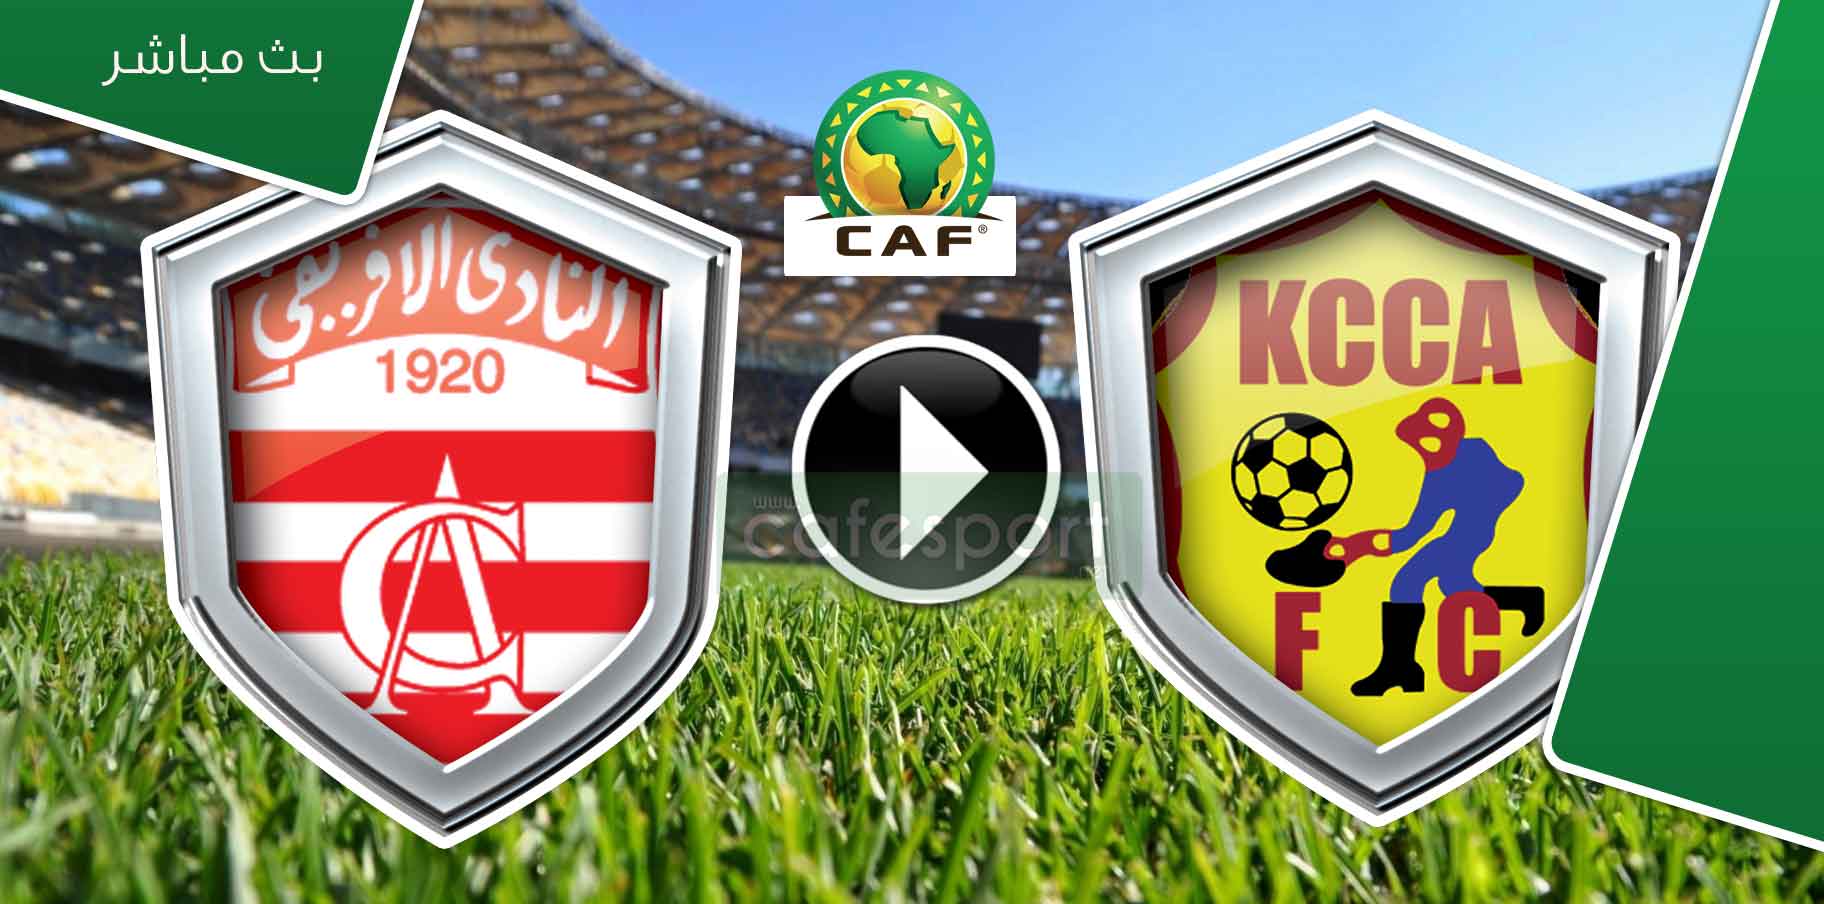 بث مباشر لمباراة كامبالا سيتي - النادي الافريقي